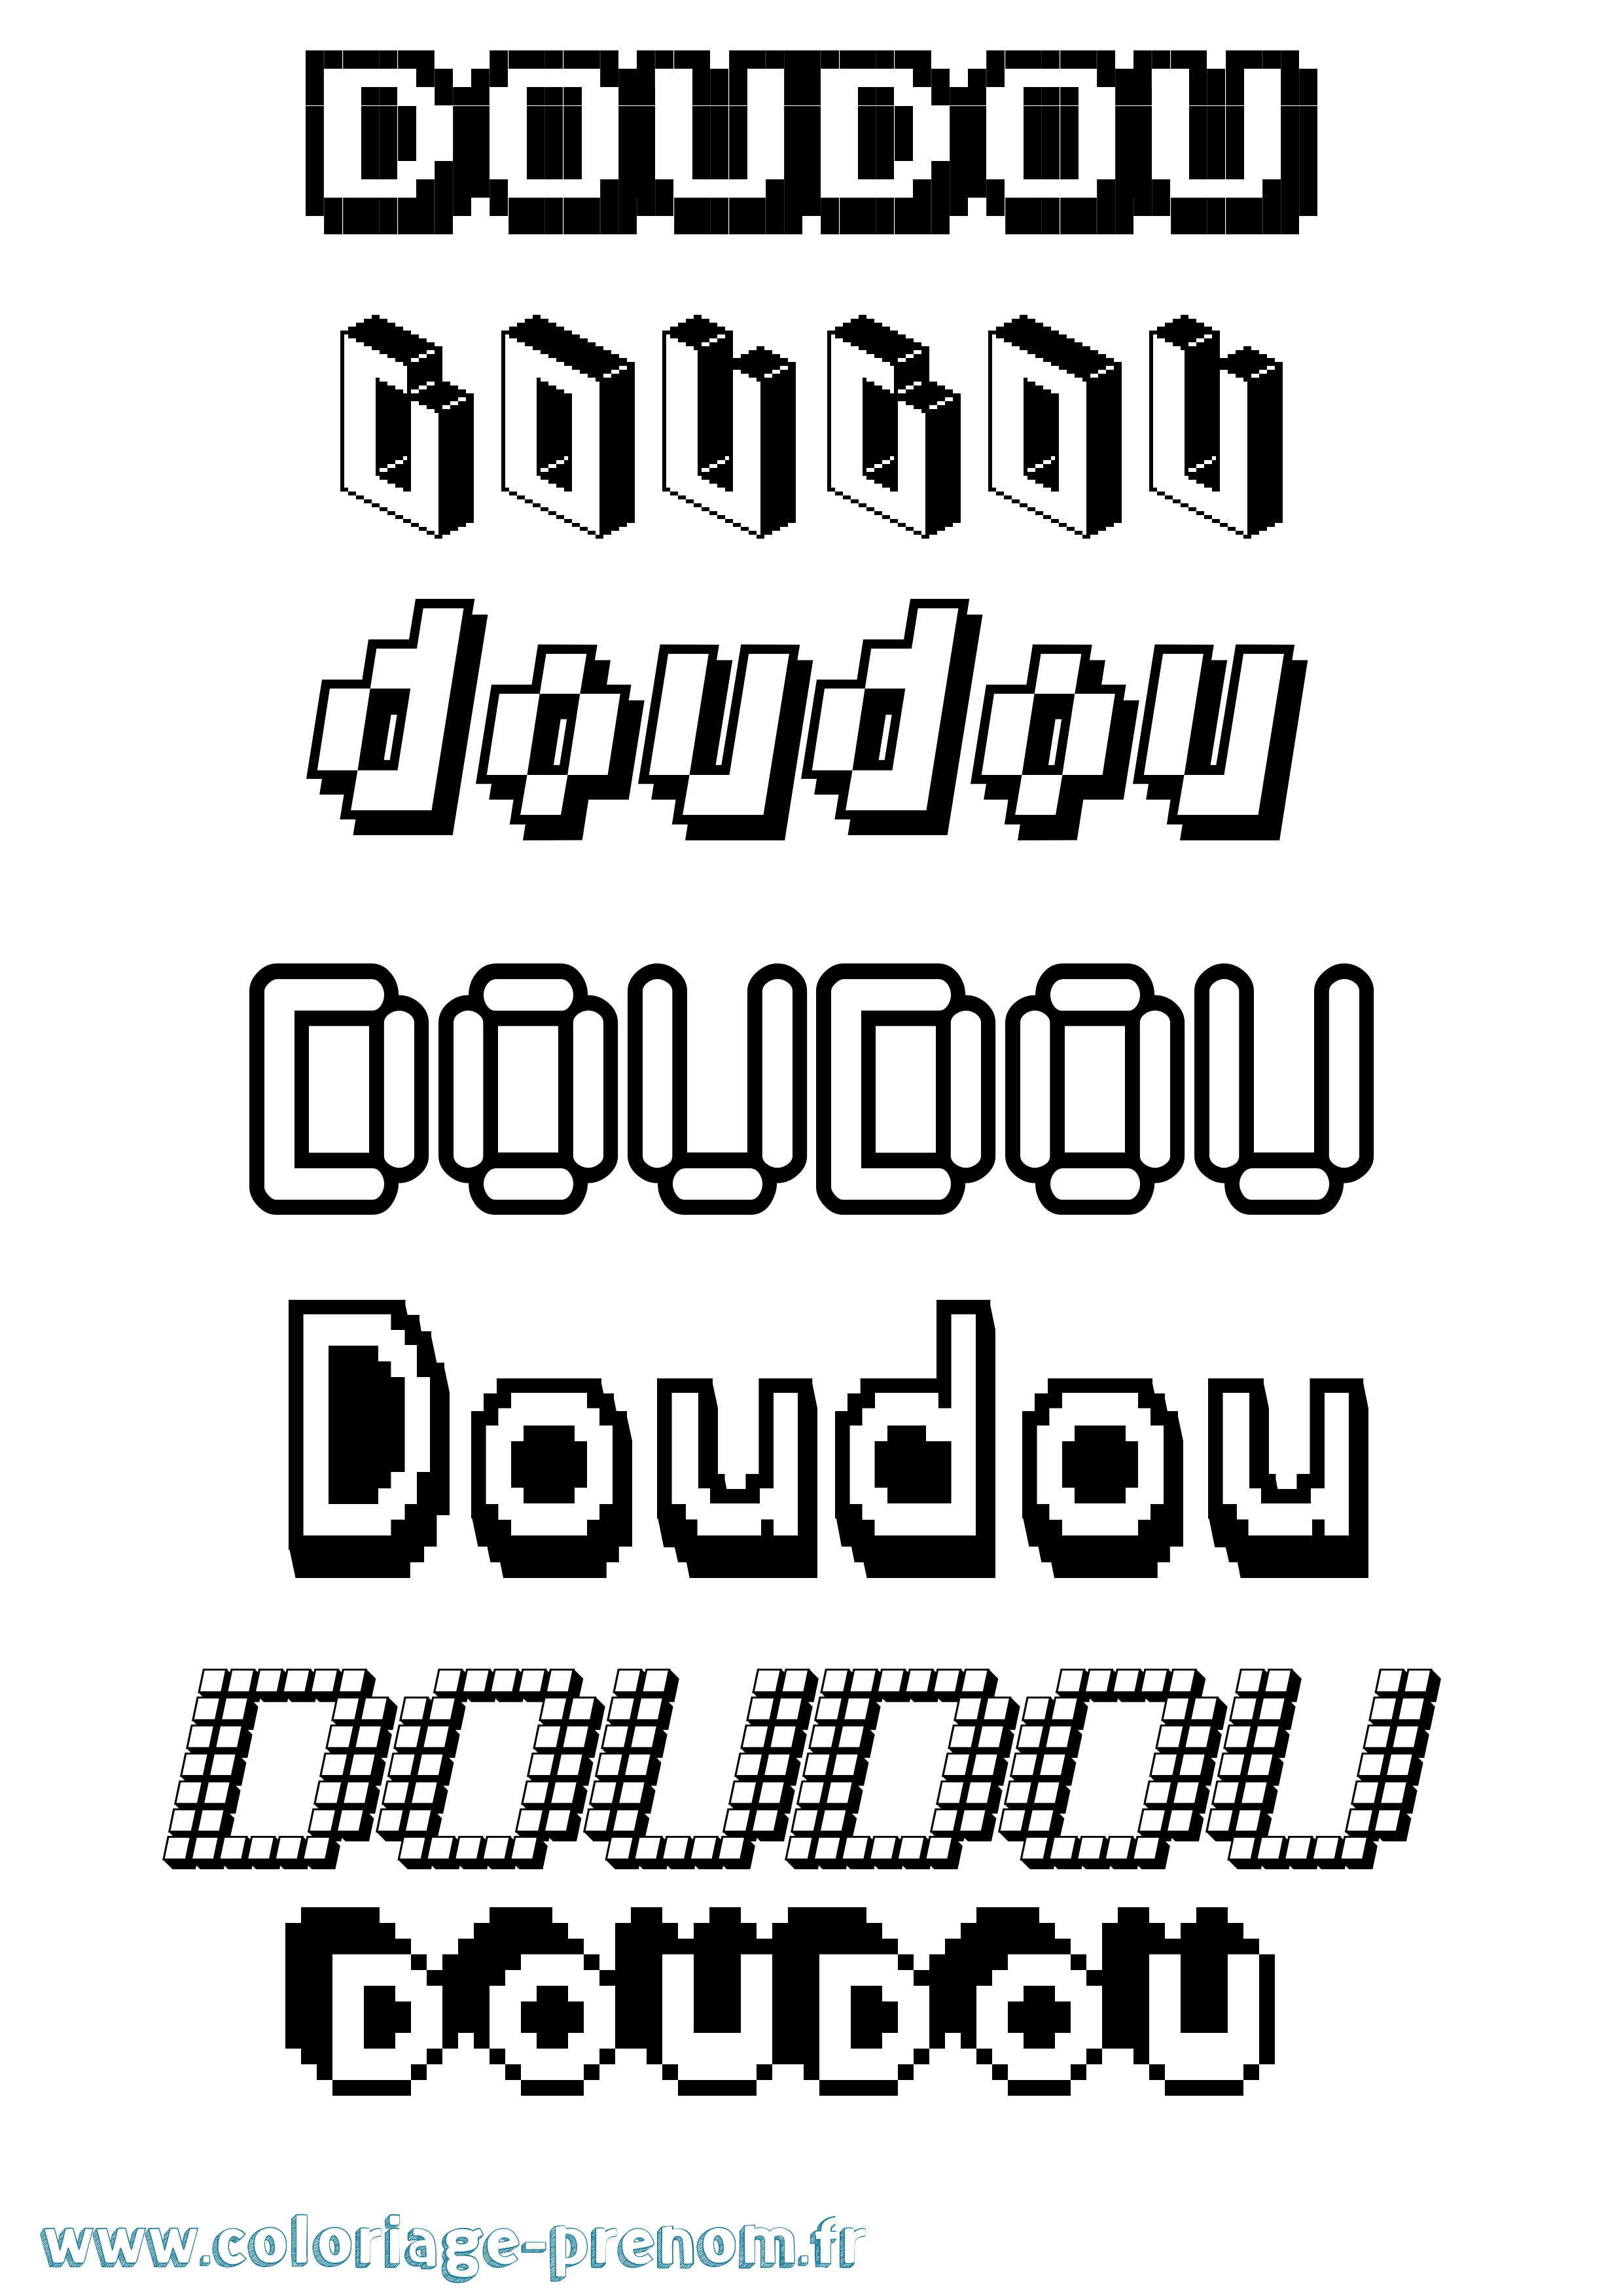 Coloriage prénom Doudou Pixel